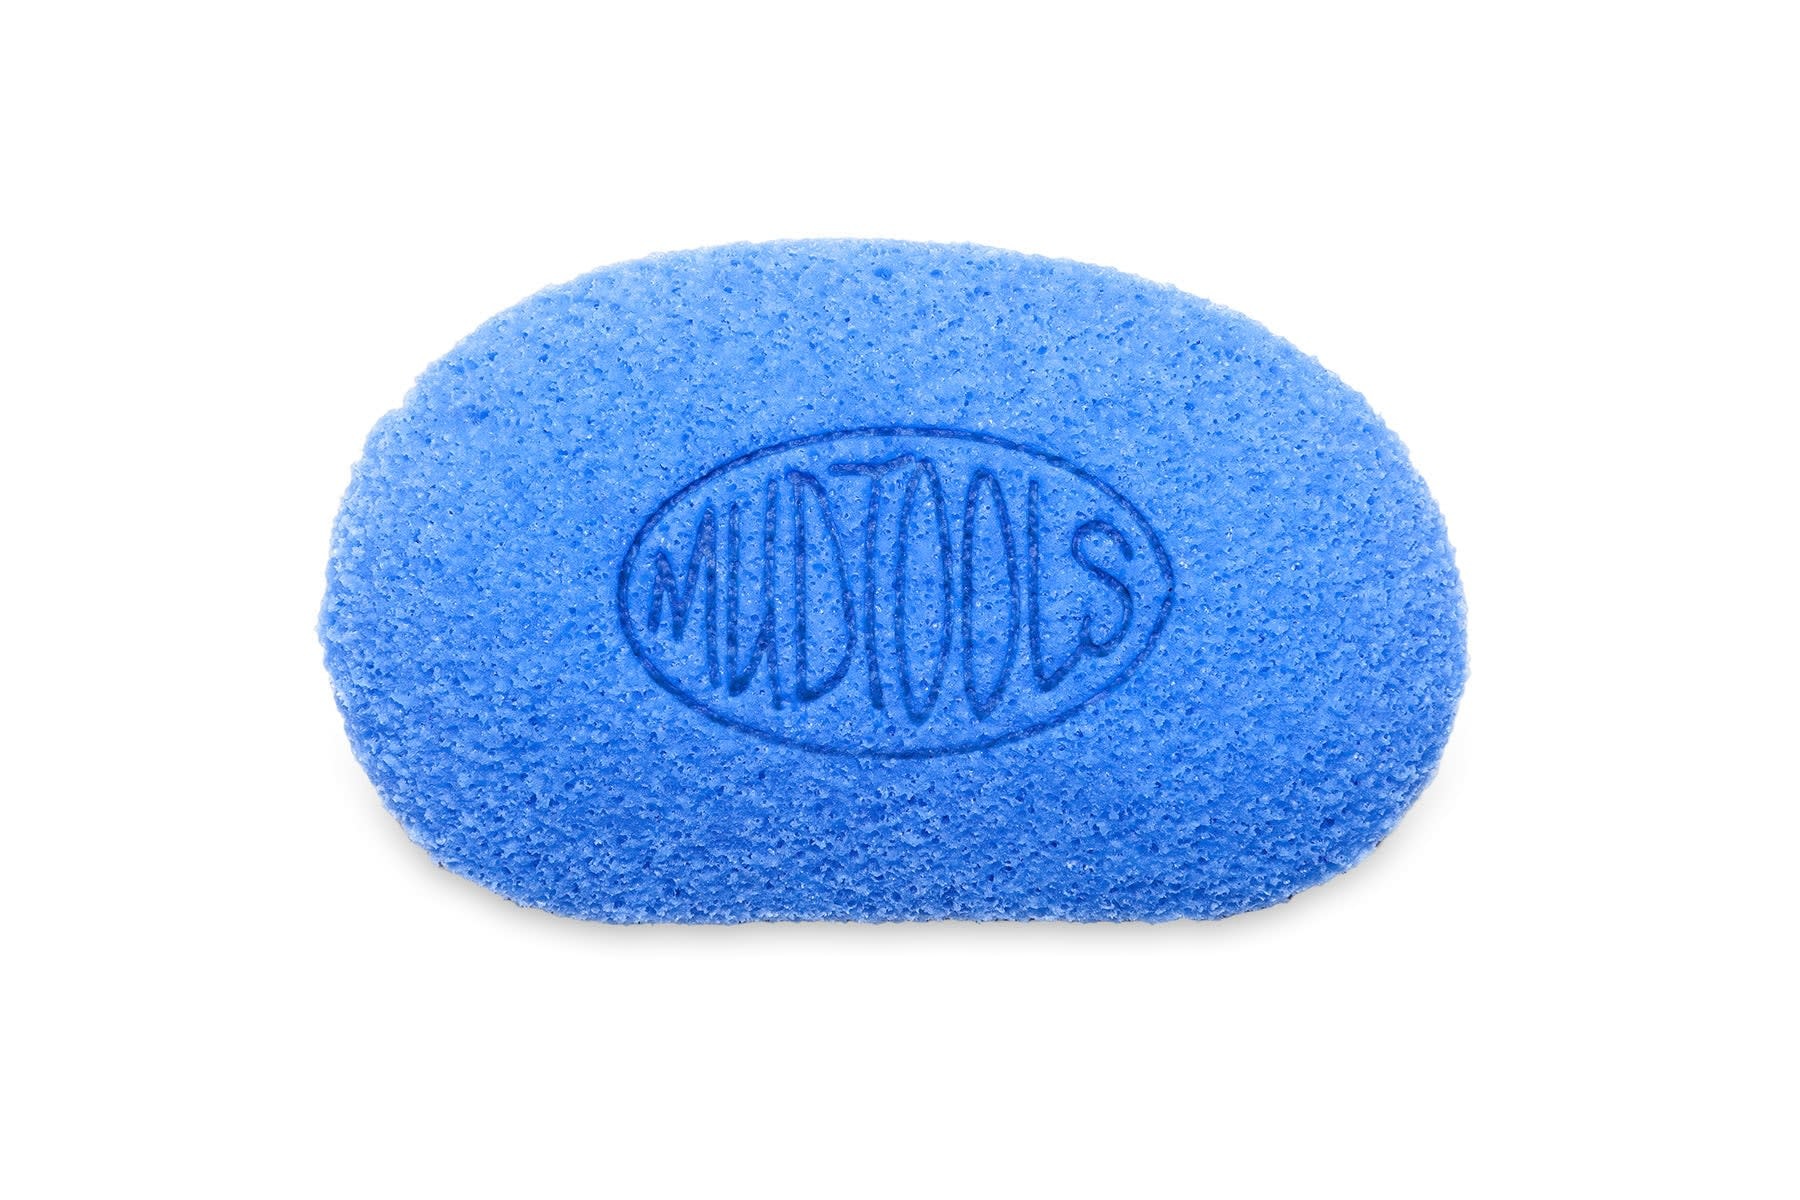 Mudtools MudSponge Workhorse Sponge - Blue